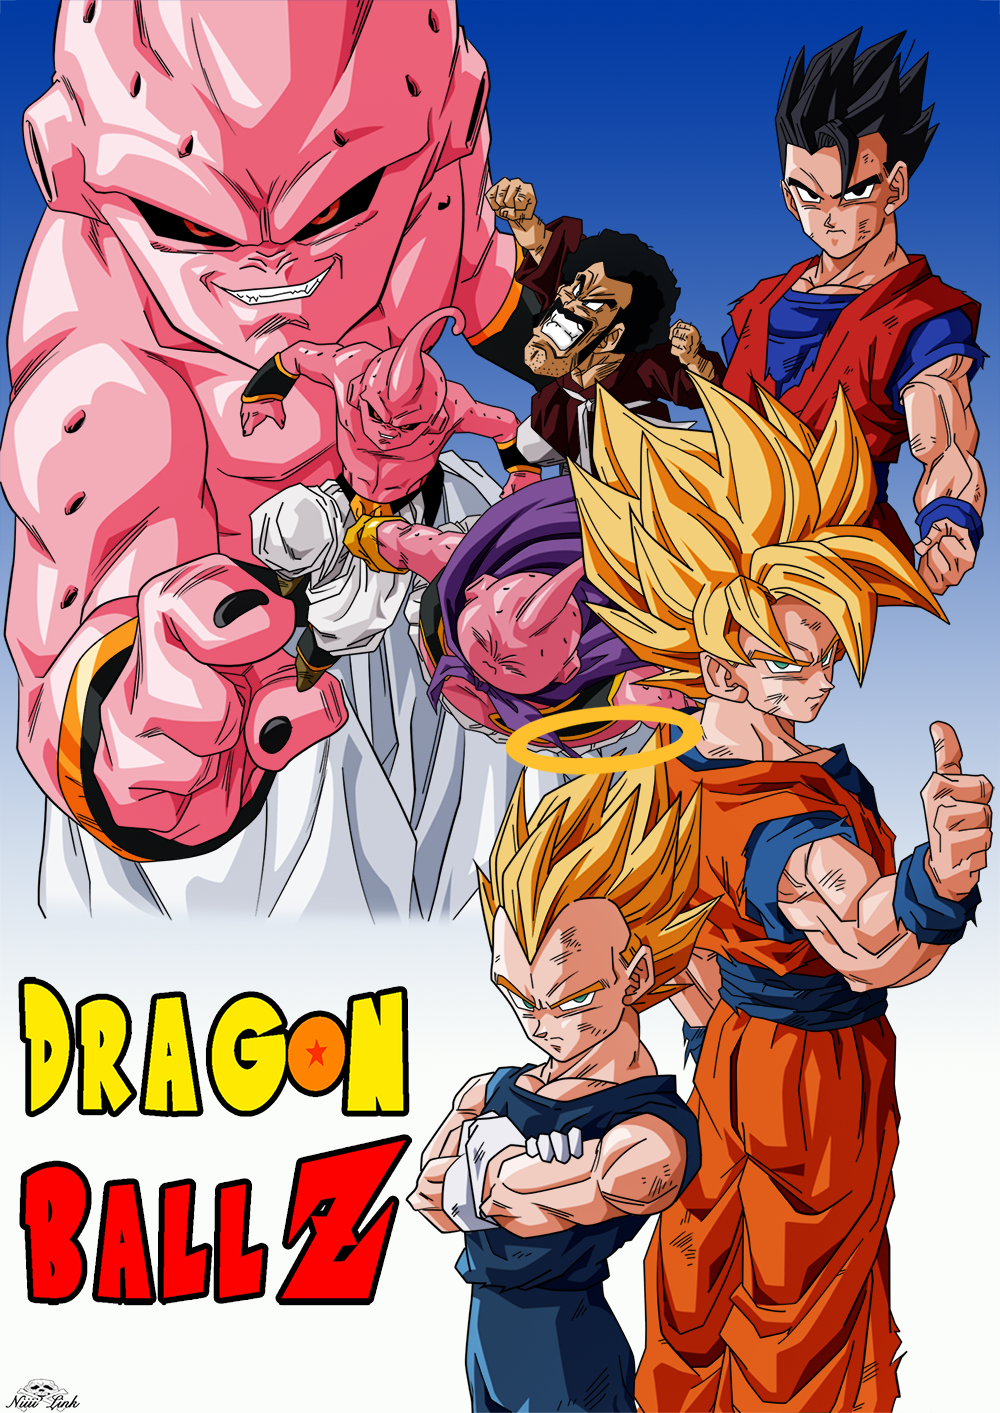 Dragon Ball Z Saga Buu by Niiii-Link on DeviantArt